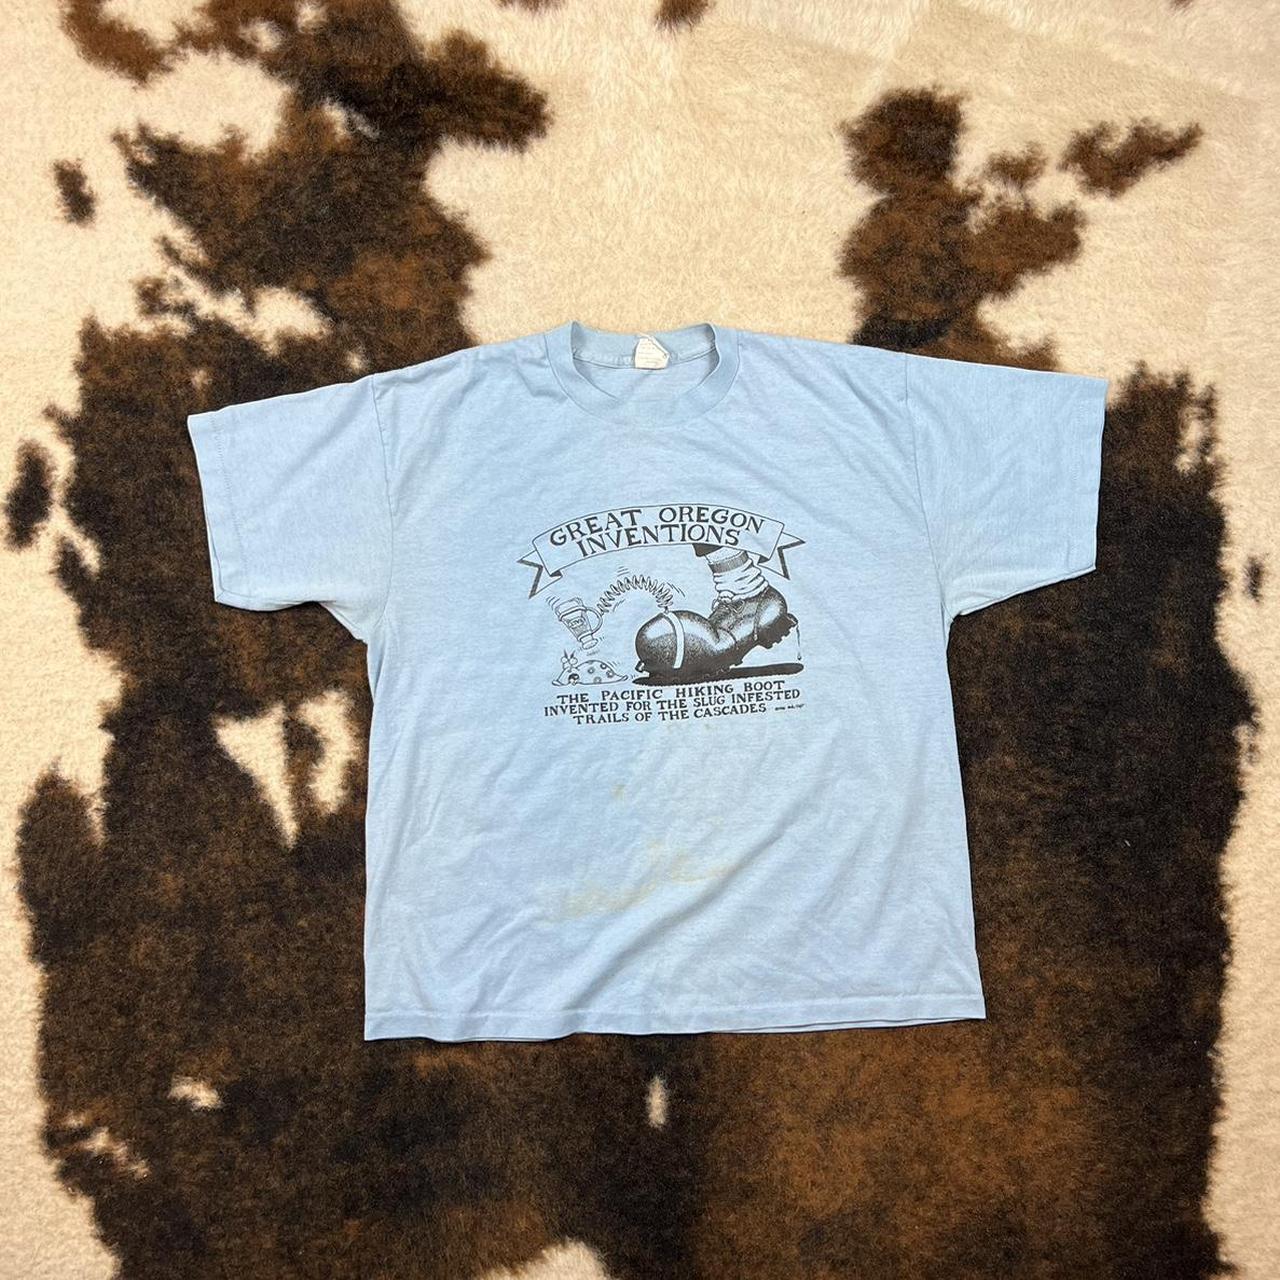 Vintage 1986 Great Oregon Inventions T-shirt Nice... - Depop